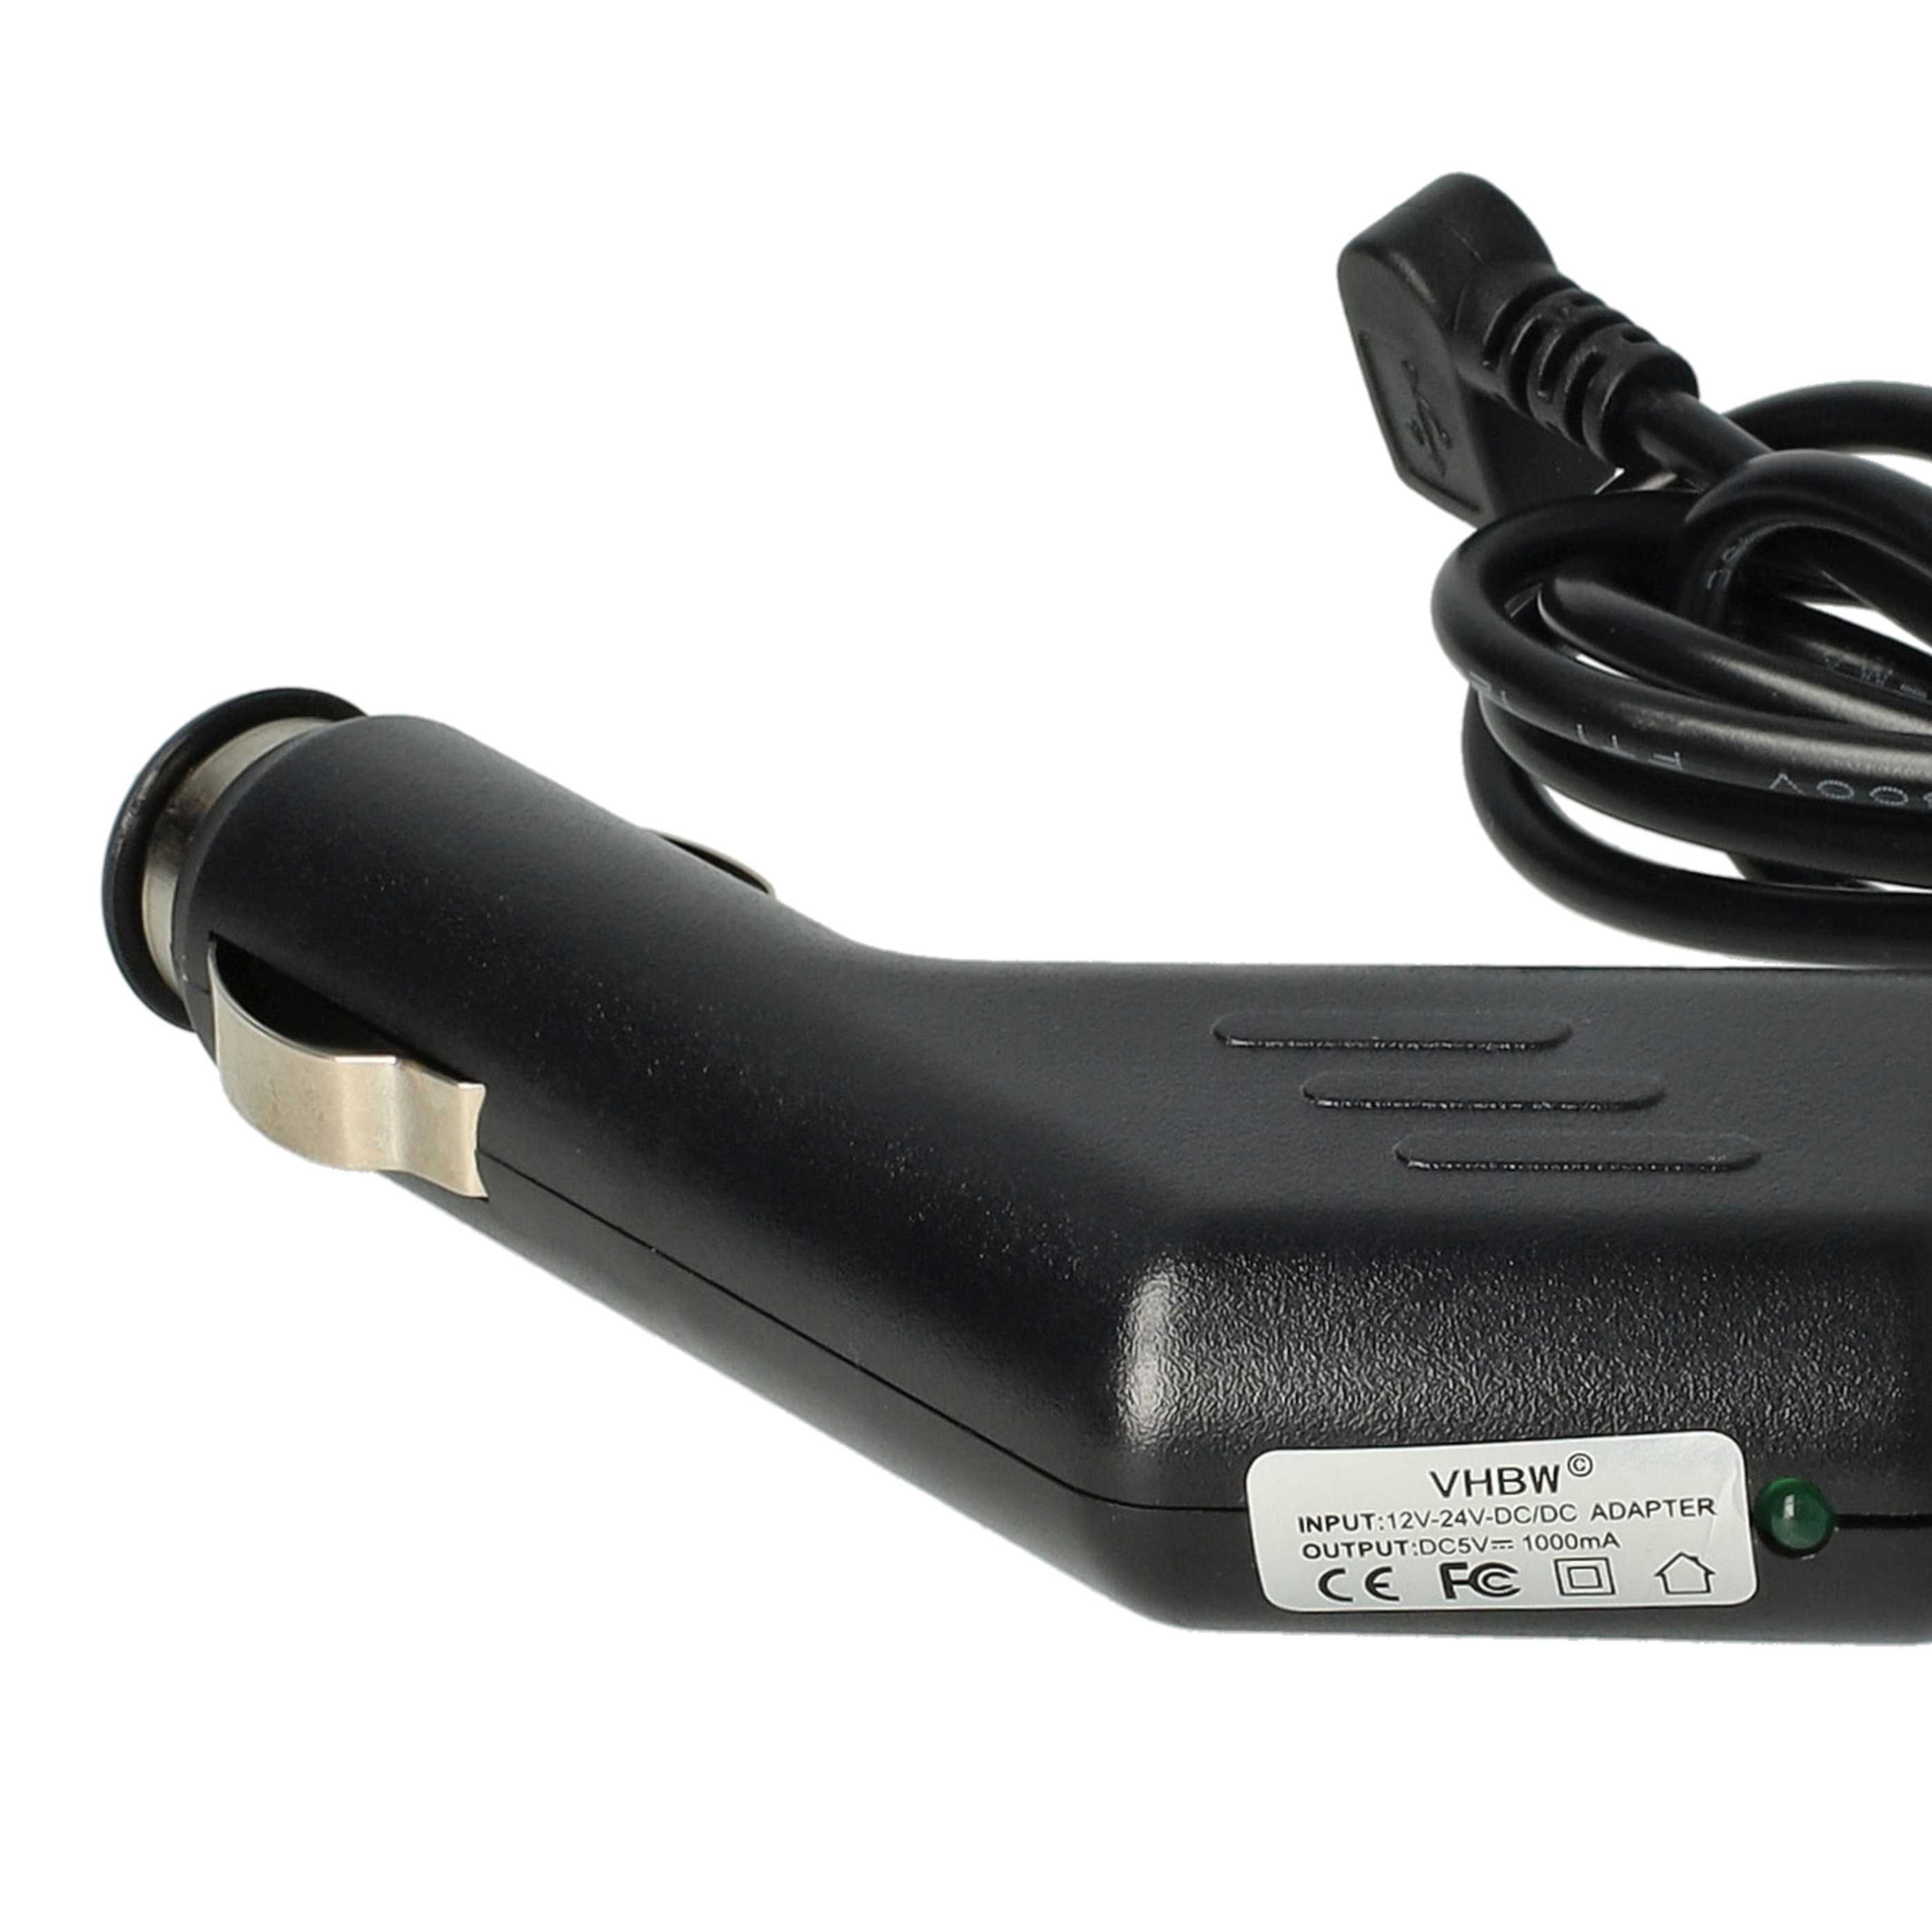 Cargador coche micro USB 1,0 A para smartphone, GPS Olympia, etc. - Cable de carga, clavija 90°